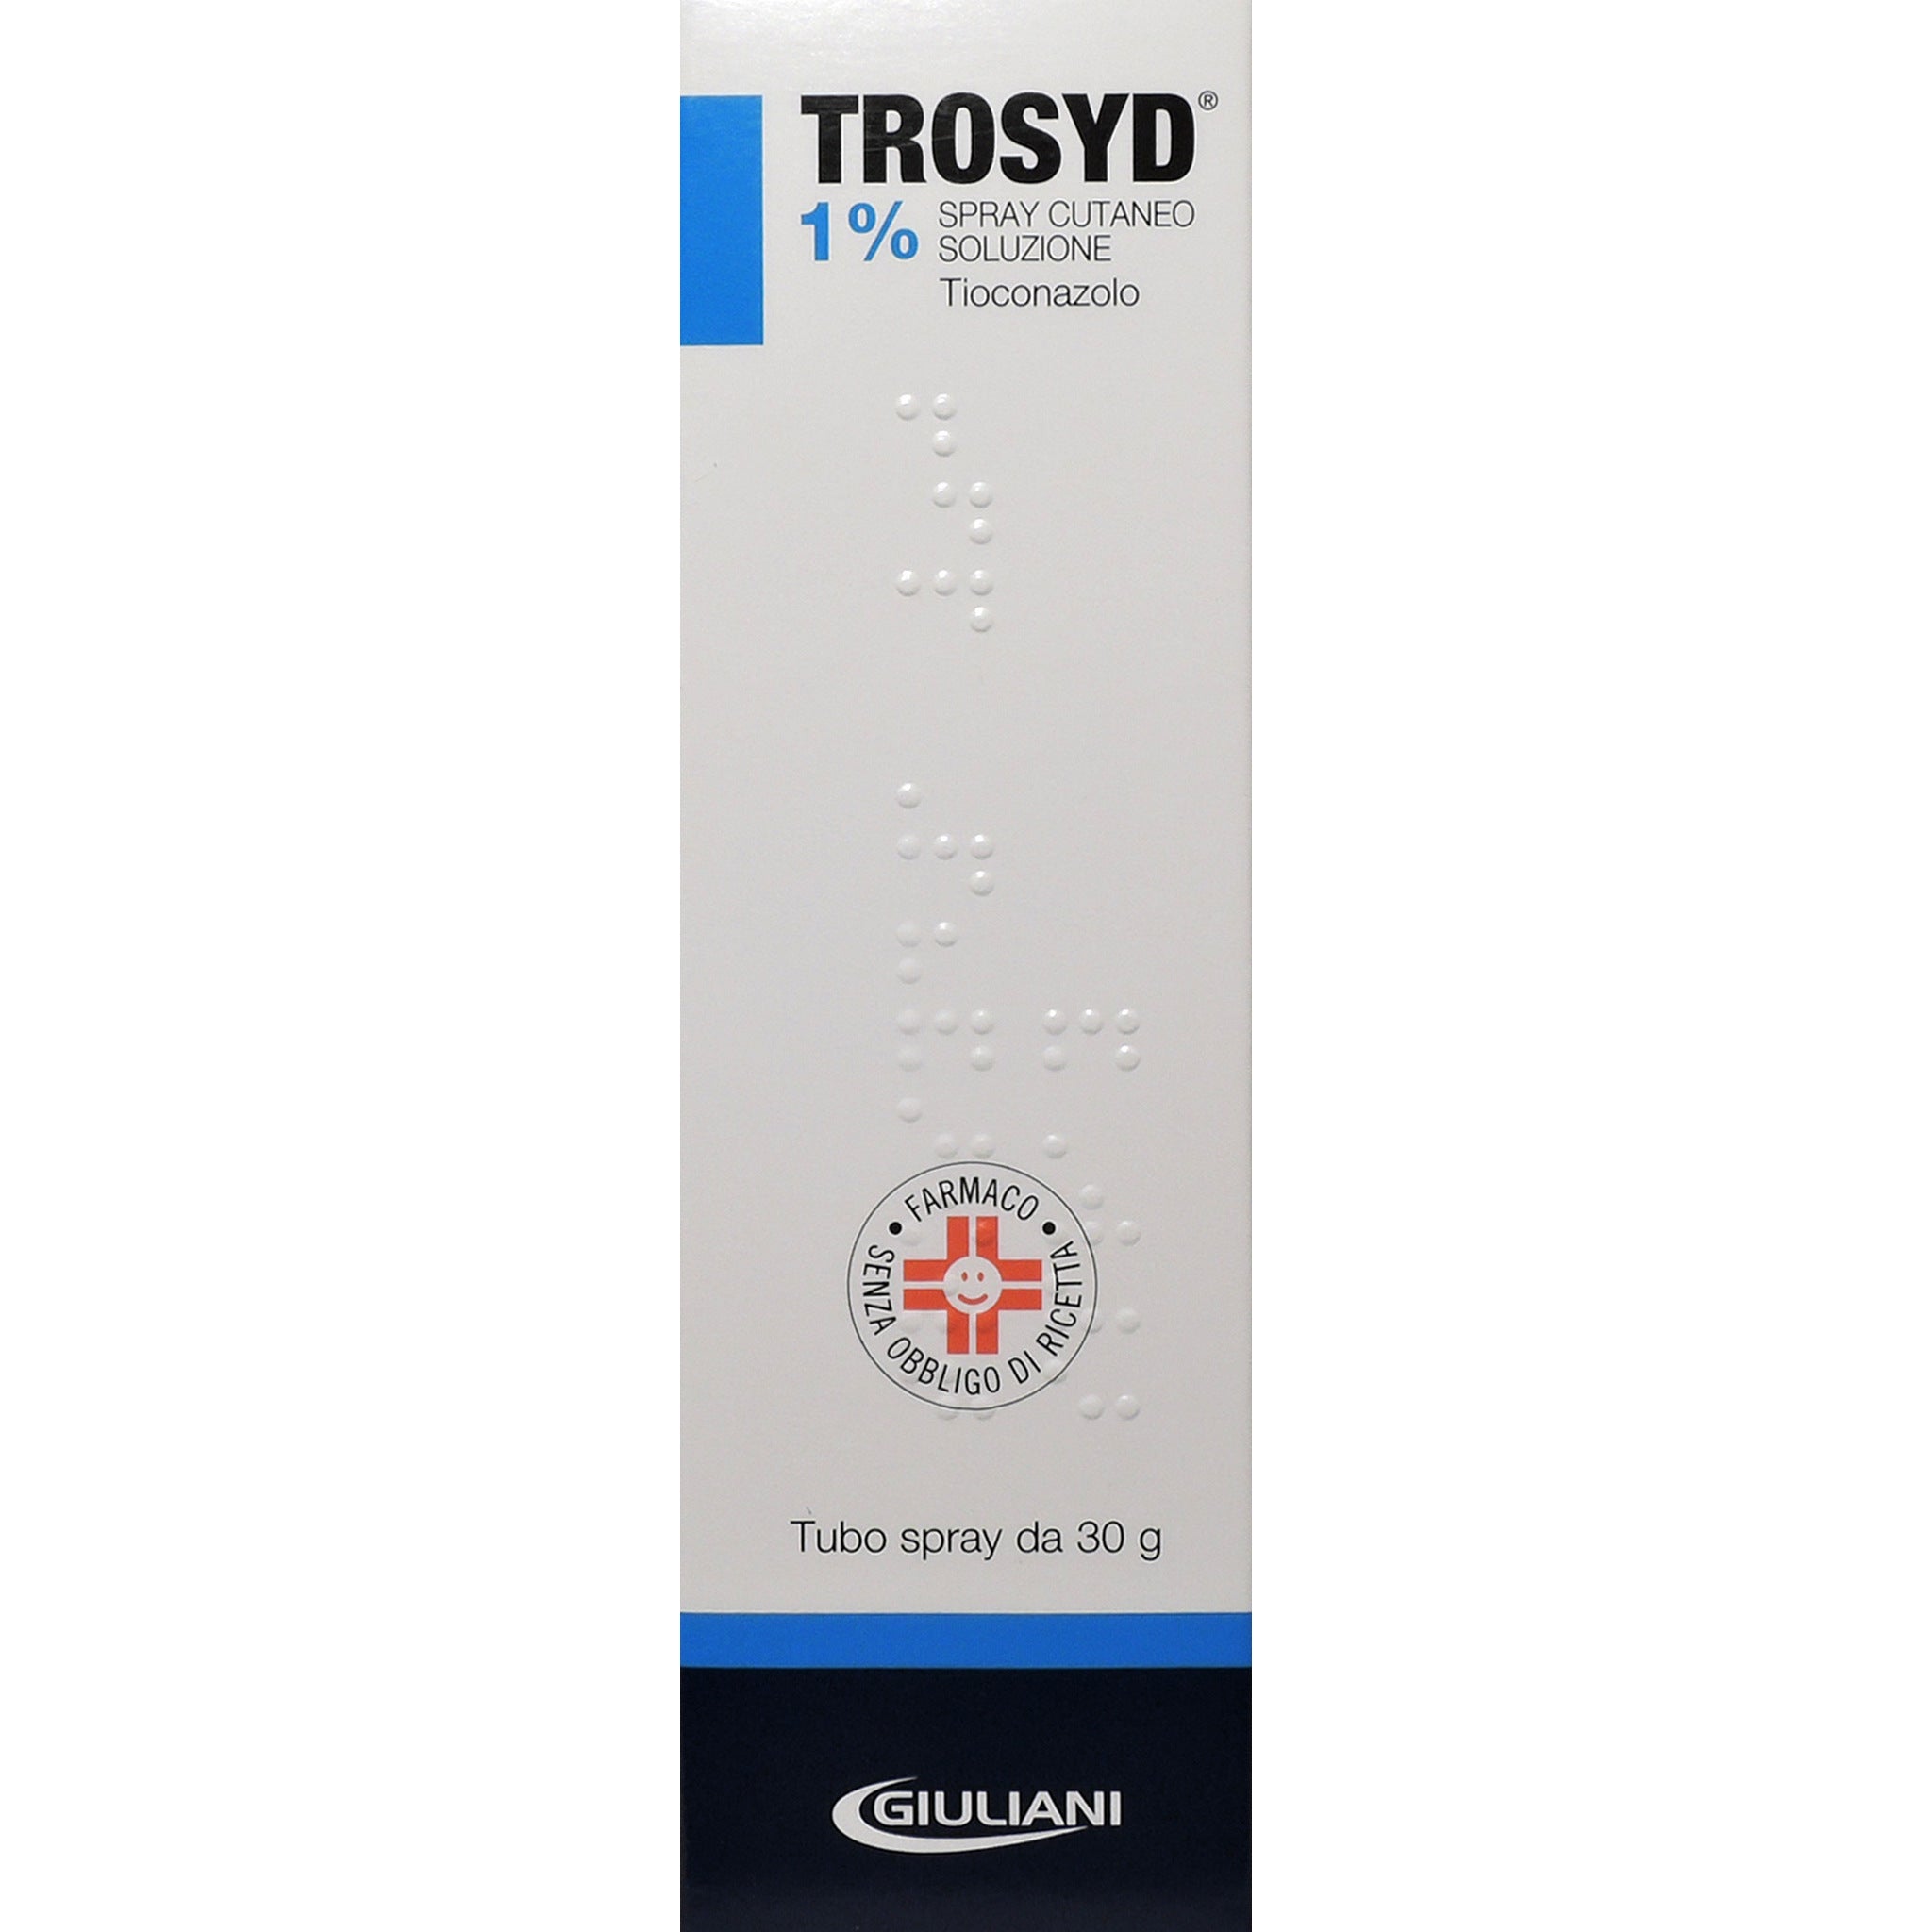 Trosyd Spray Cutaneo 30g 1%